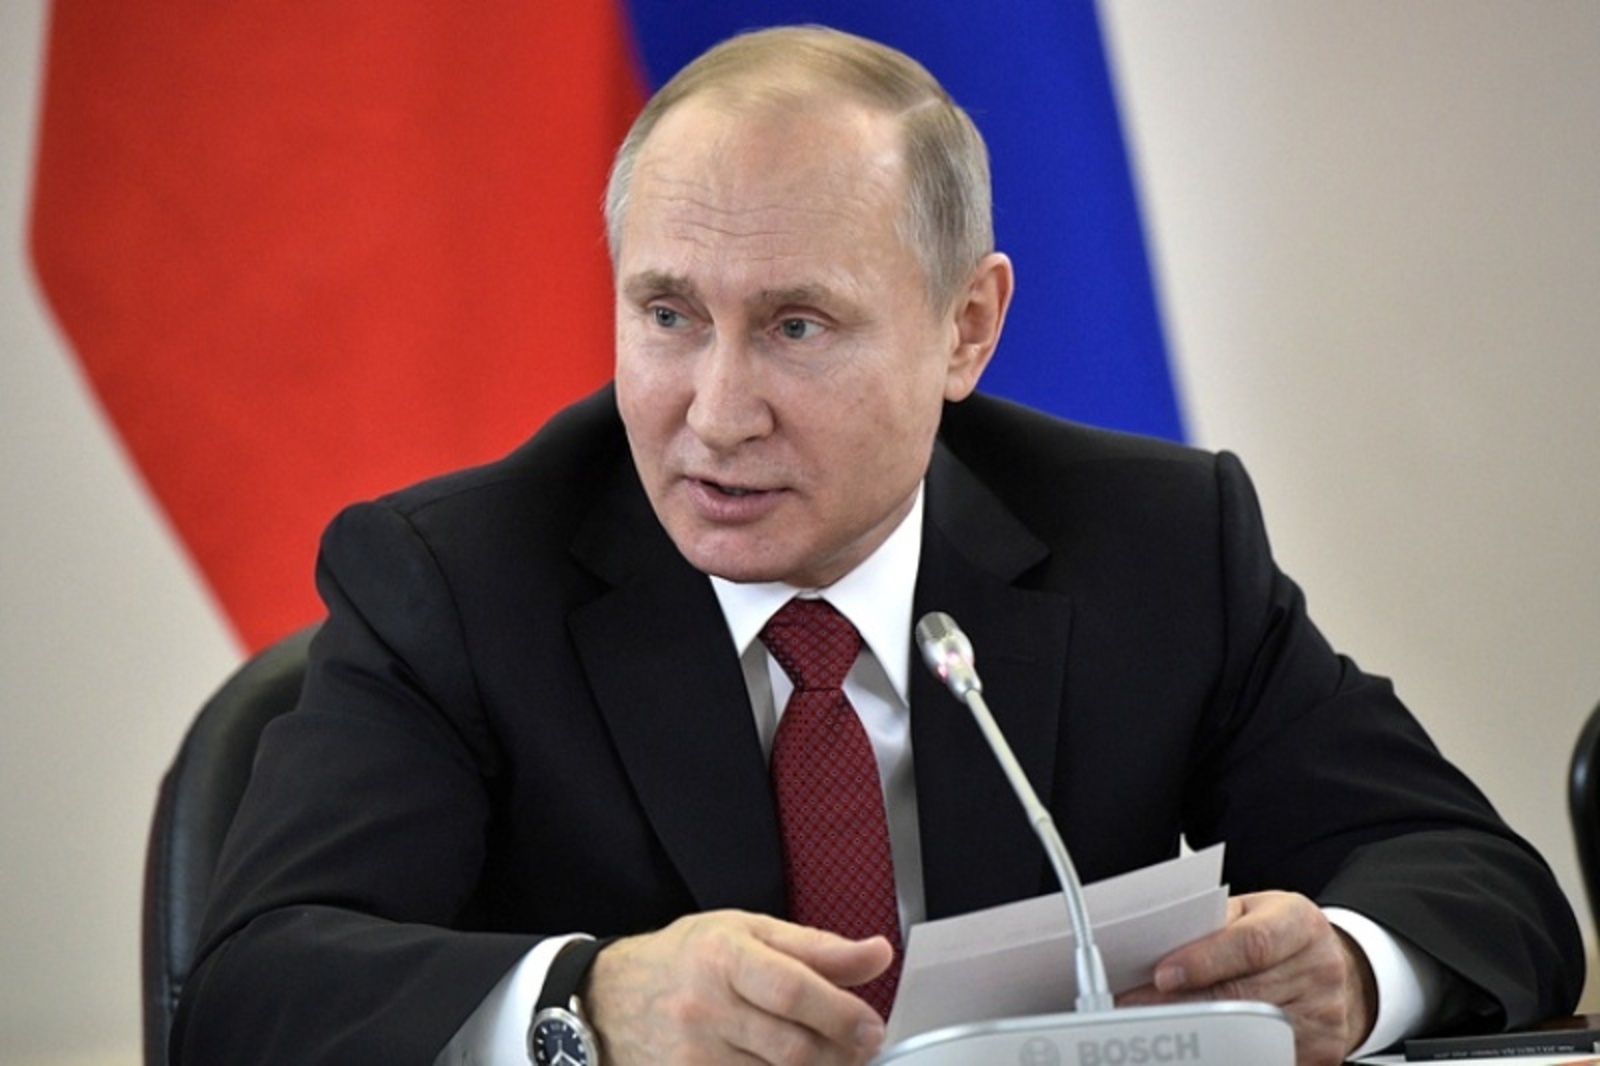 Путин оценил санкции словами «не было бы счастья, да несчастье помогло»